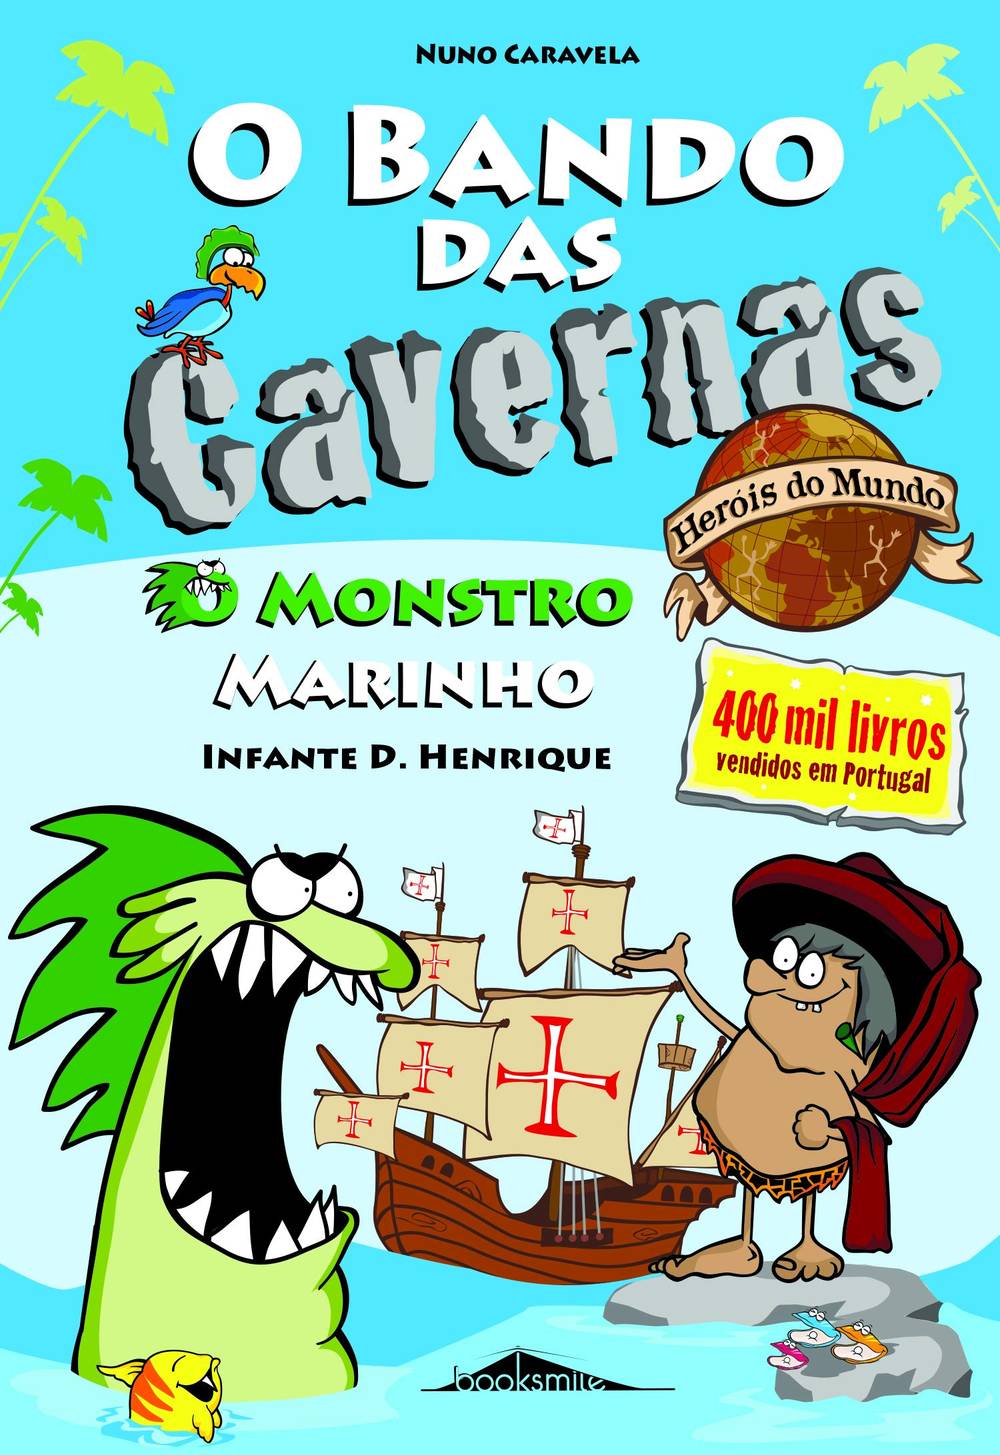 O Bando das Cavernas - Heróis do Mundo N.º 1 de Nuno Caravela - O Monstro Marinho (2ª Edição)